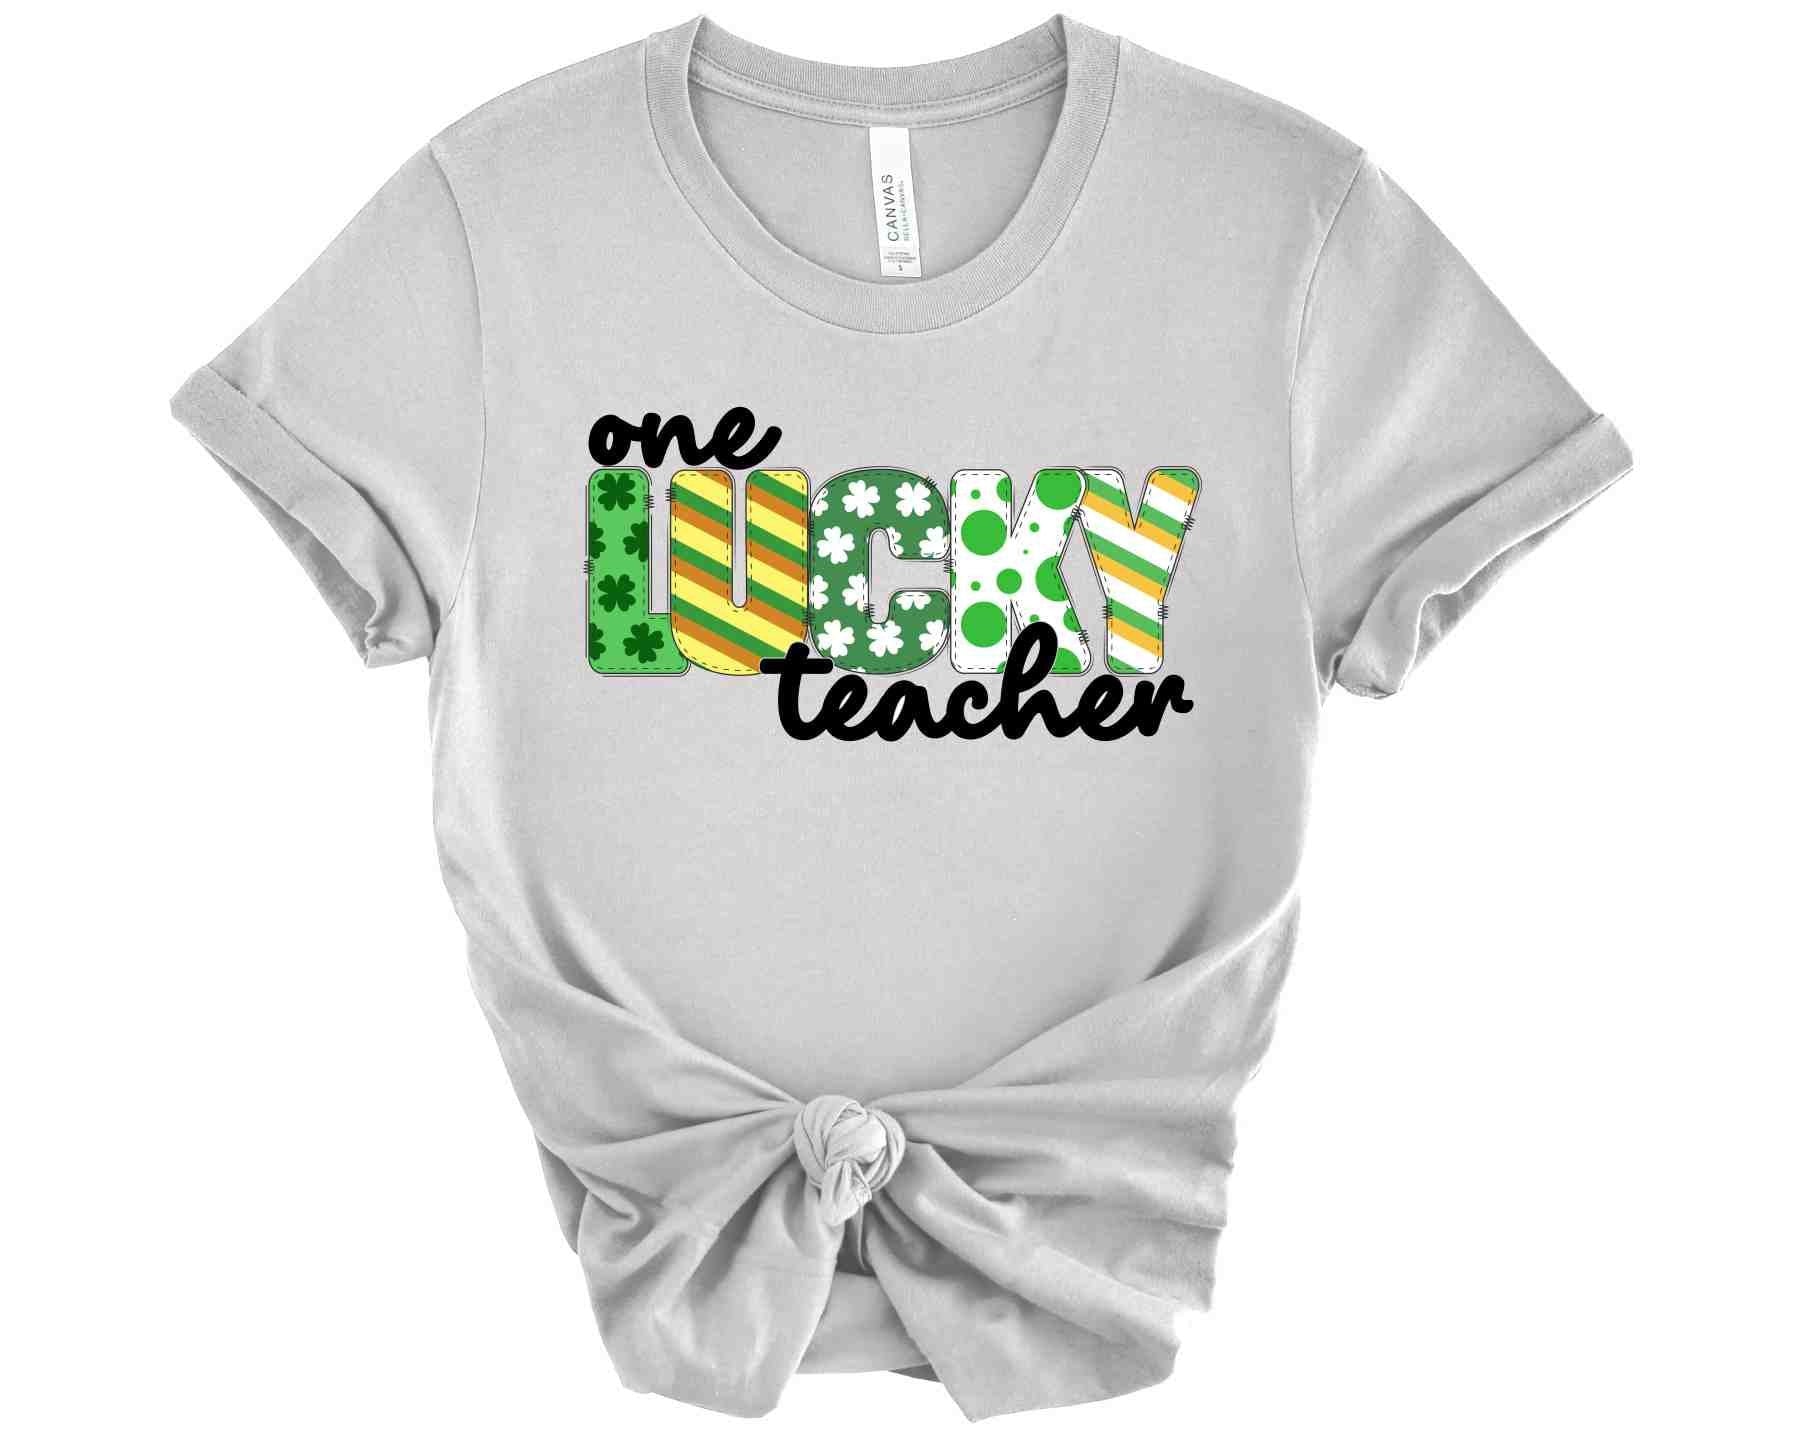 St. Patrick's Teacher Shirt, One Lucky Teacher, Shamrocks, Gift for Teacher, School party shirt, Shamrock Graphic Tee, Teacher Appreciation - SBS T Shop